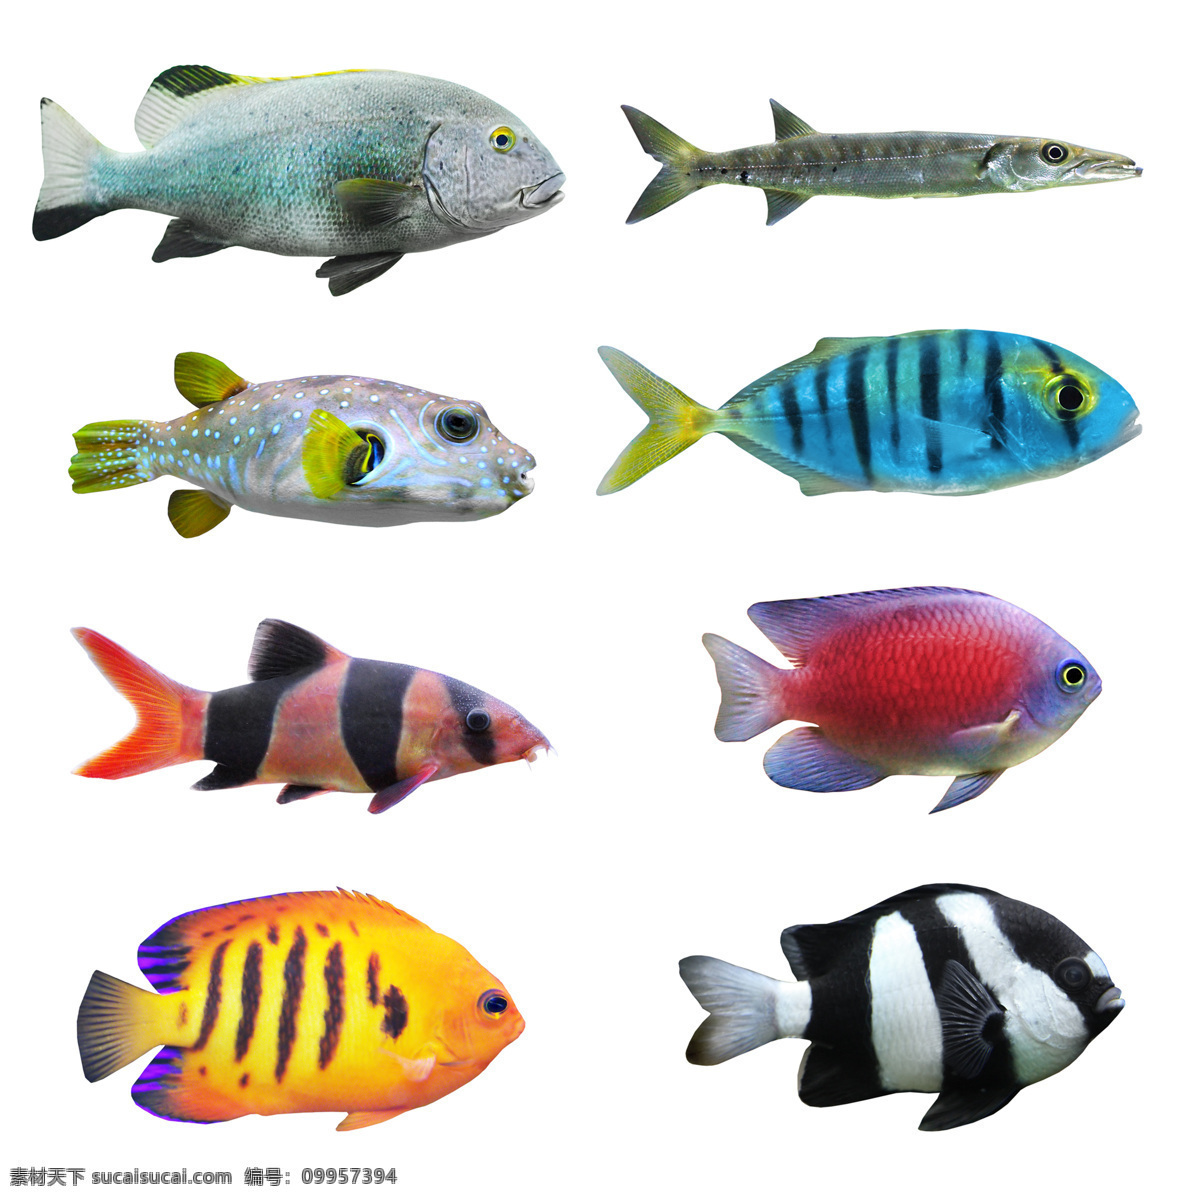 小鱼 种类 大全 高清 热带鱼 彩色 海洋鱼类 彩色鱼 鱼儿 鱼类 漂亮的鱼 海洋生物 动物图片 白色